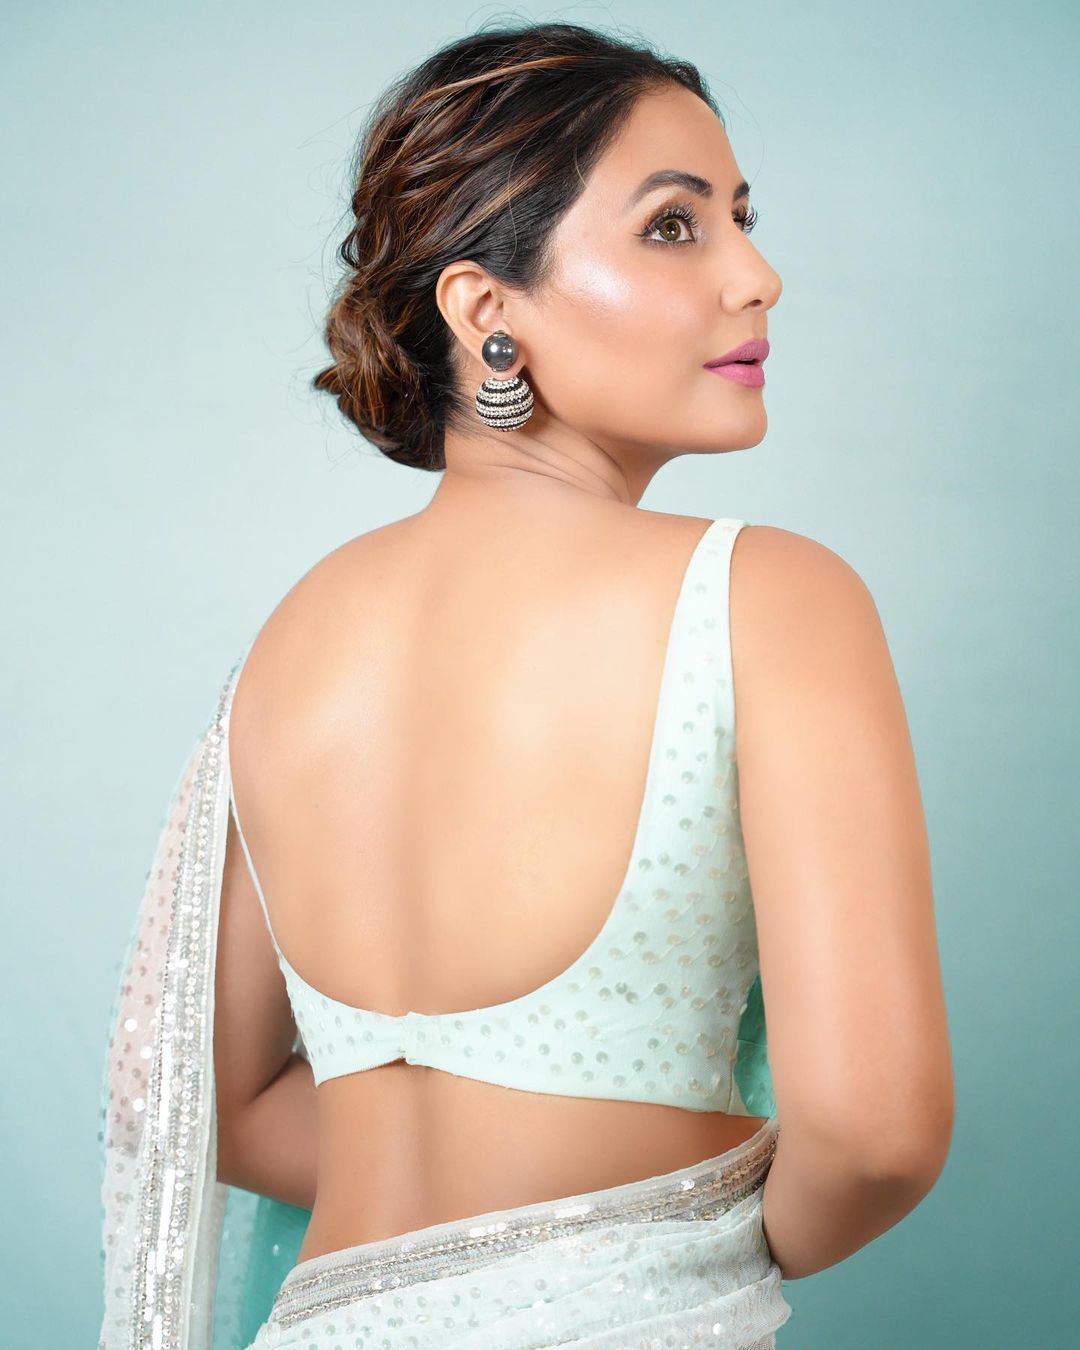 Hina Khan backless saree hot indian actress